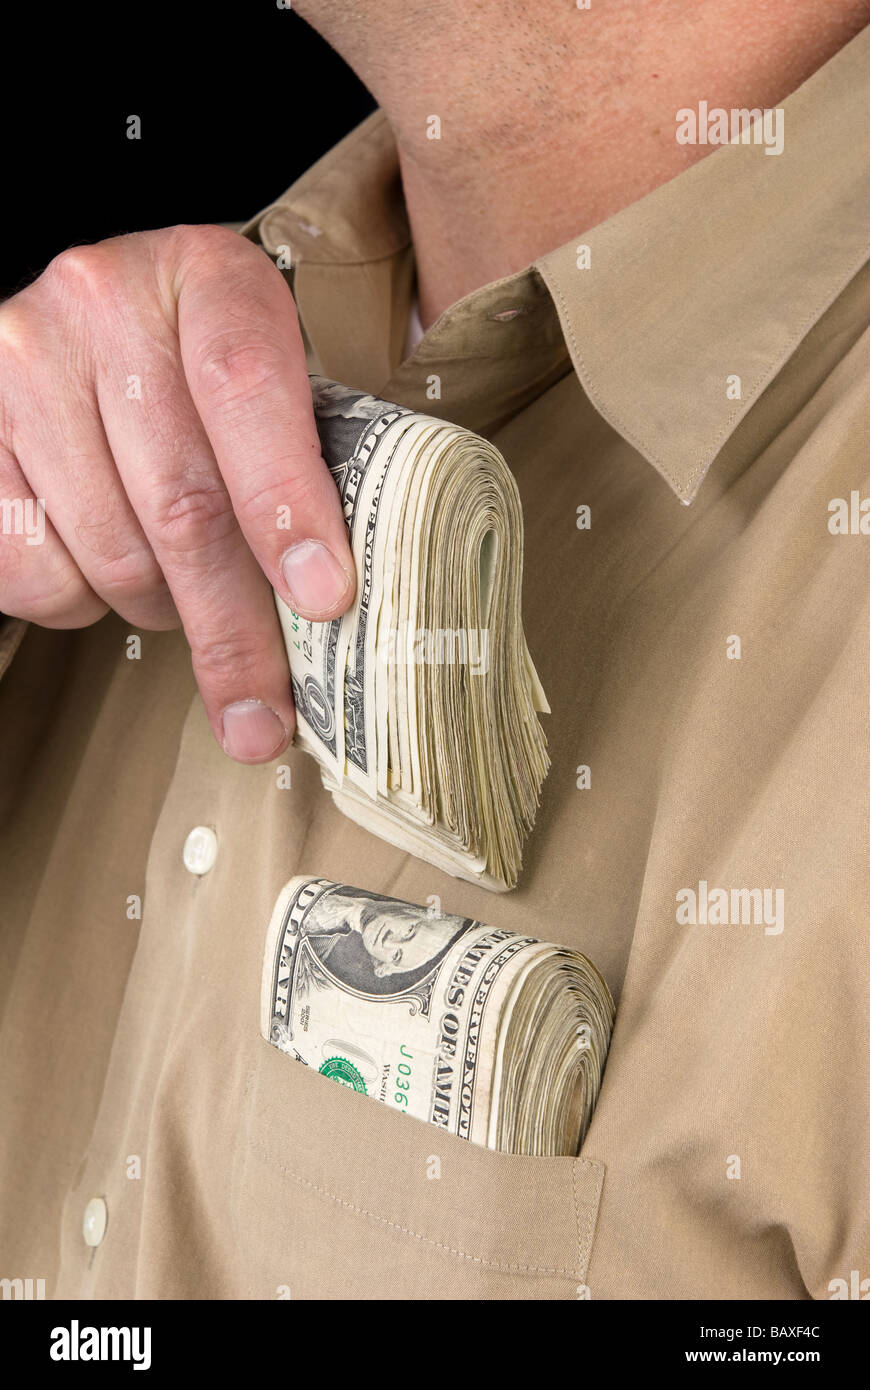 Un homme met liasses de billets dans sa poche de chemise Banque D'Images